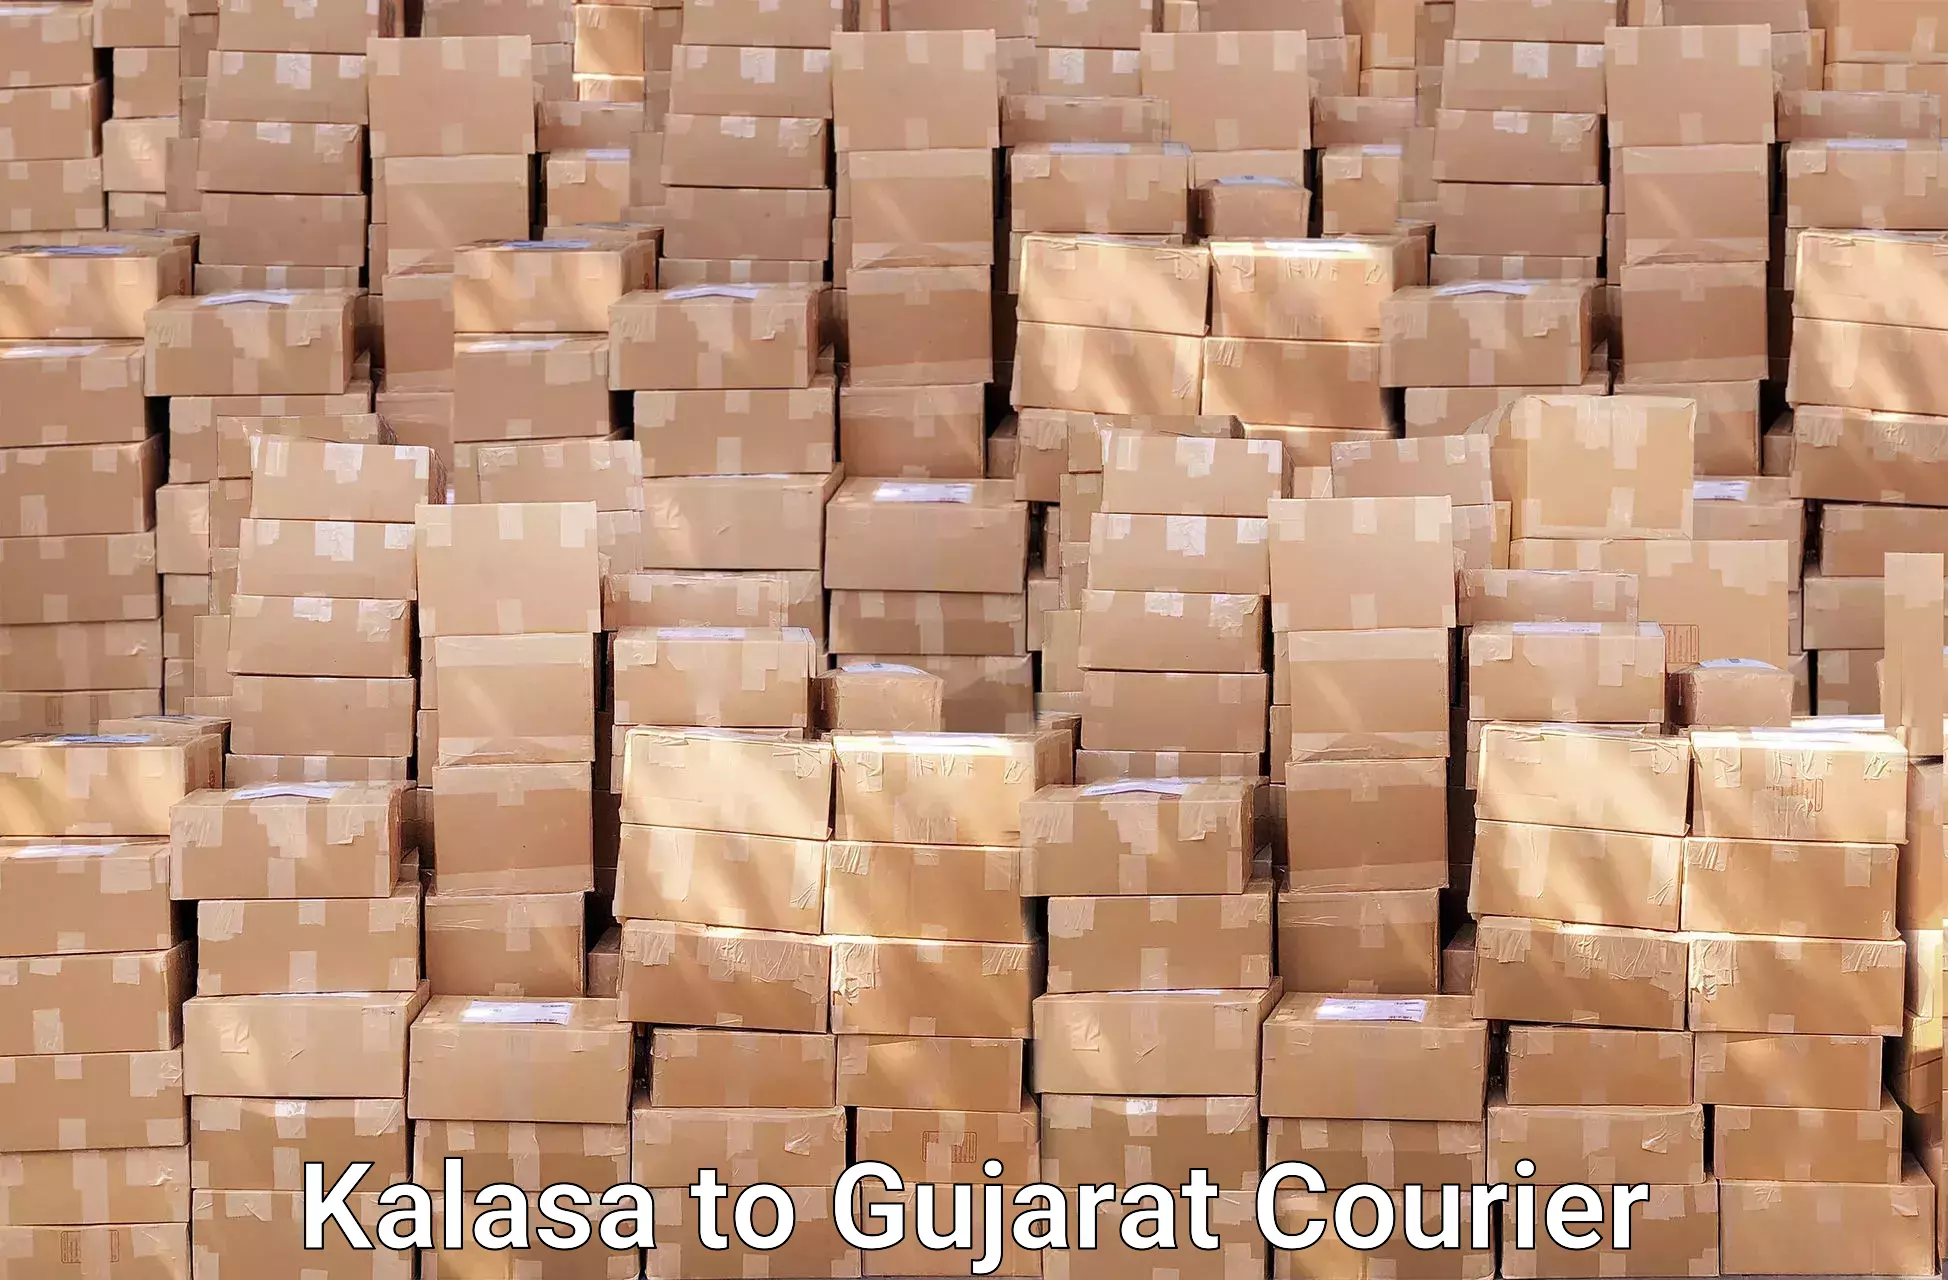 Furniture moving experts Kalasa to Gujarat